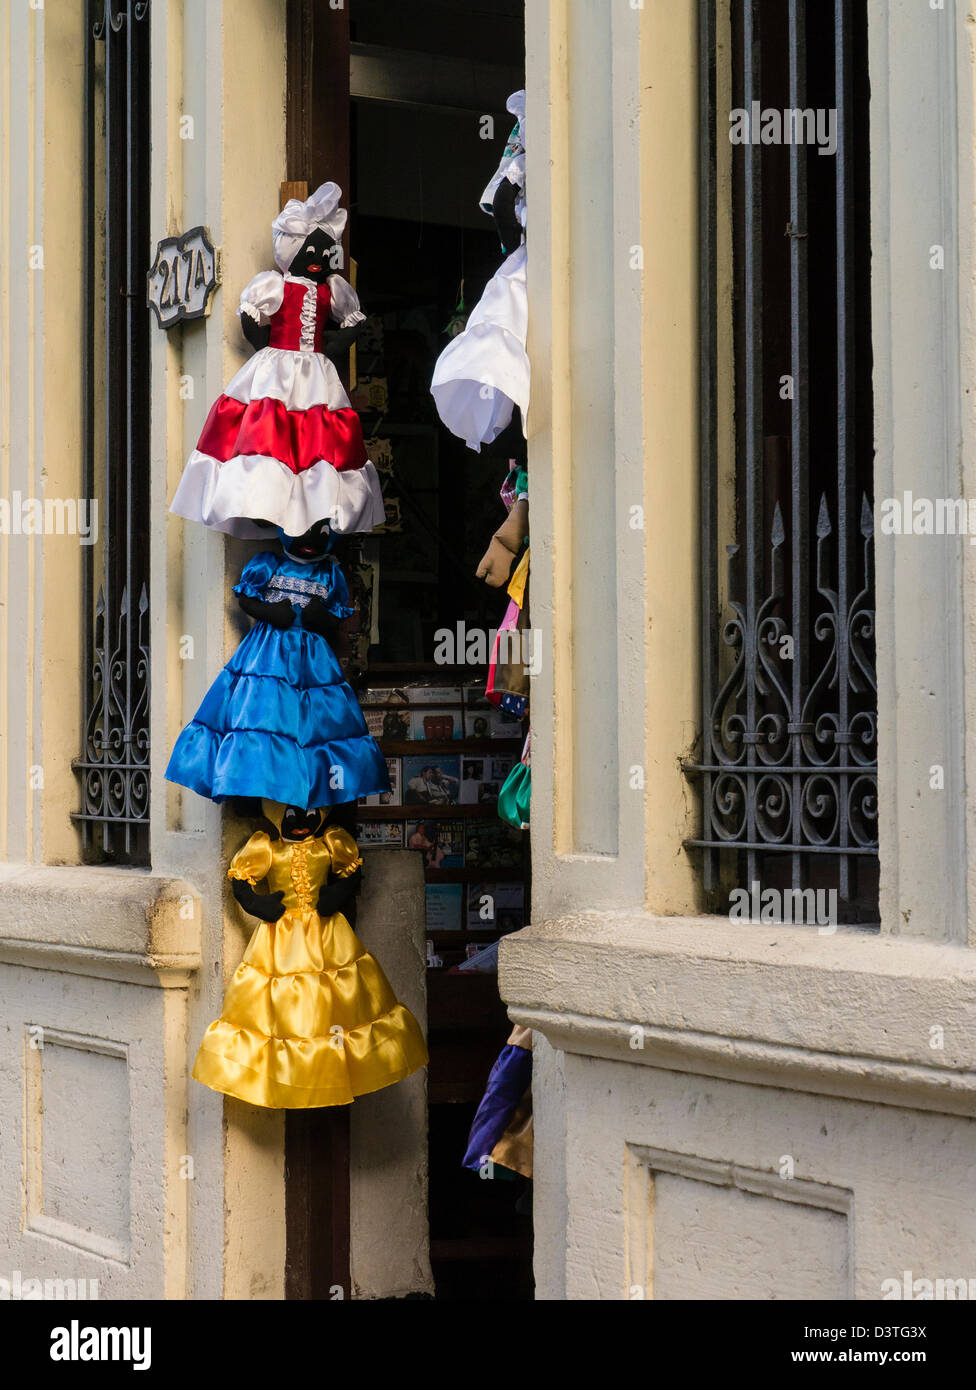 Schwarze weibliche Puppen in Kostüme hängen, übereinander in der Tür einer Filiale in Havanna, Kuba. Stockfoto